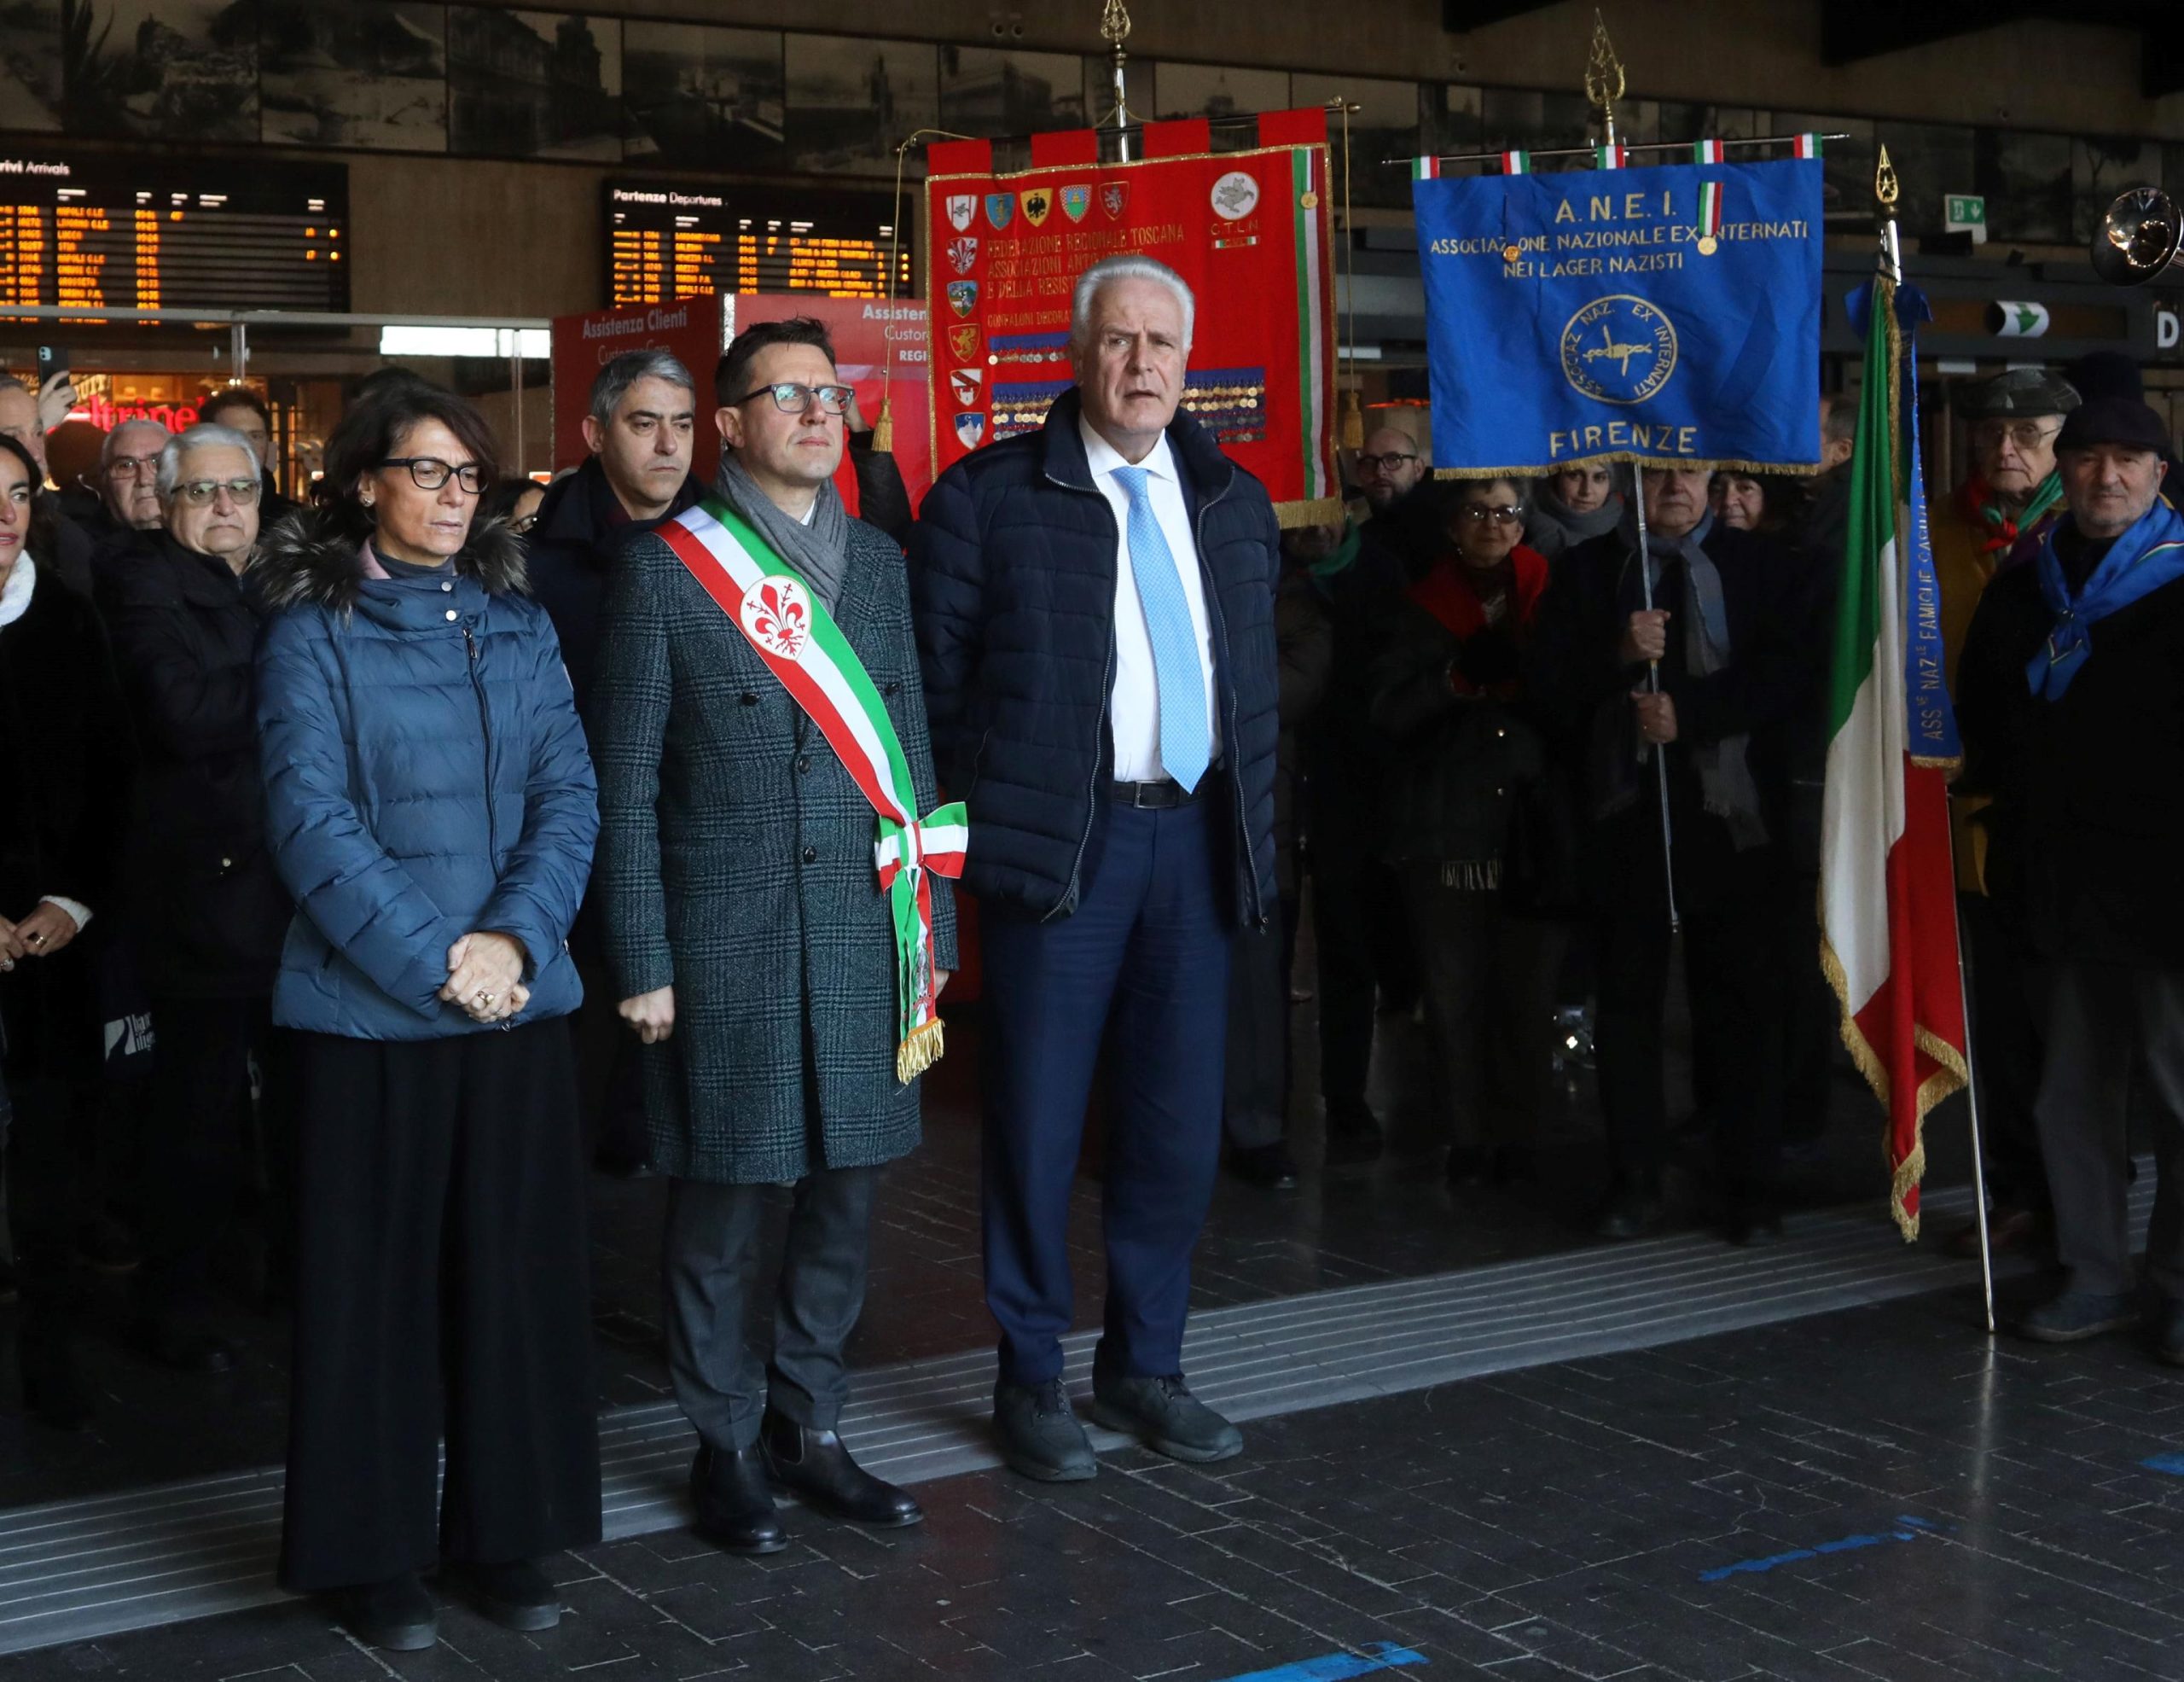 Il sindaco Dario Nardella, il presidente di regione Eugenio Giani, il Prefetto Francesca Ferrandino